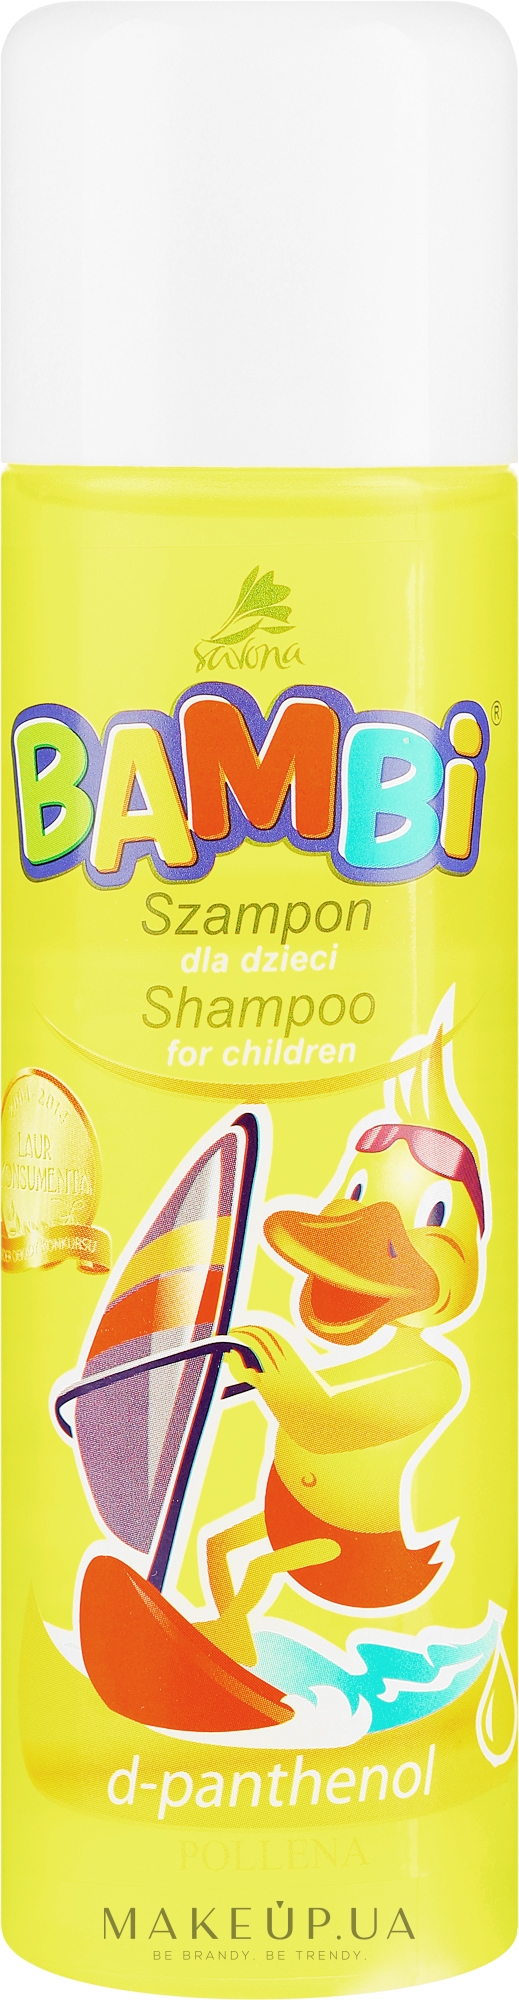 Шампунь для детей - Pollena Savona Bambi D-phantenol Shampoo — фото 150ml